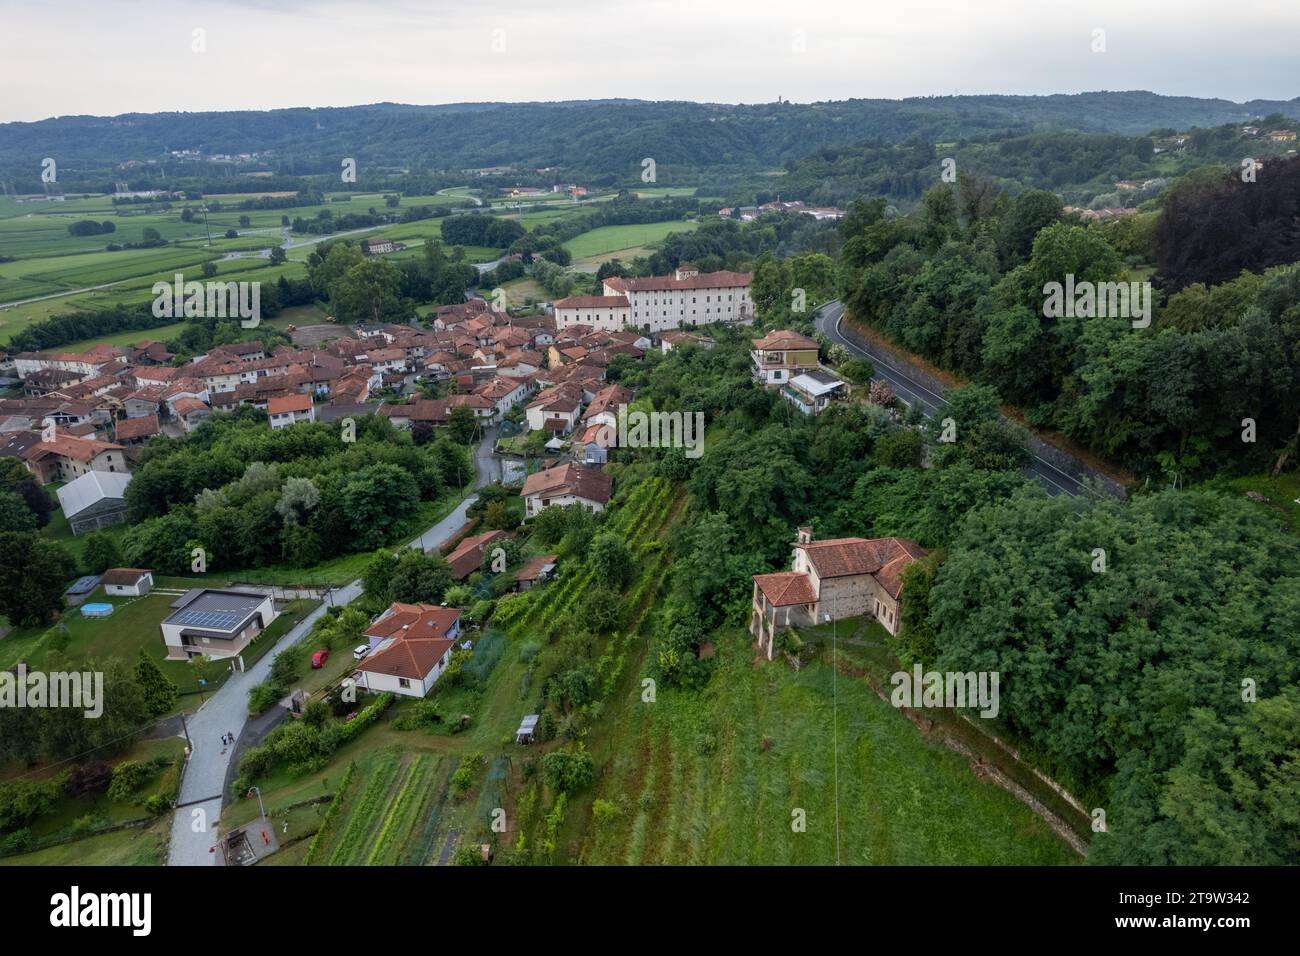 Drone panorama aérien du village de Colleretto Giacosa près d'Ivrea dans le Piémont, Italie, vue panoramique Banque D'Images